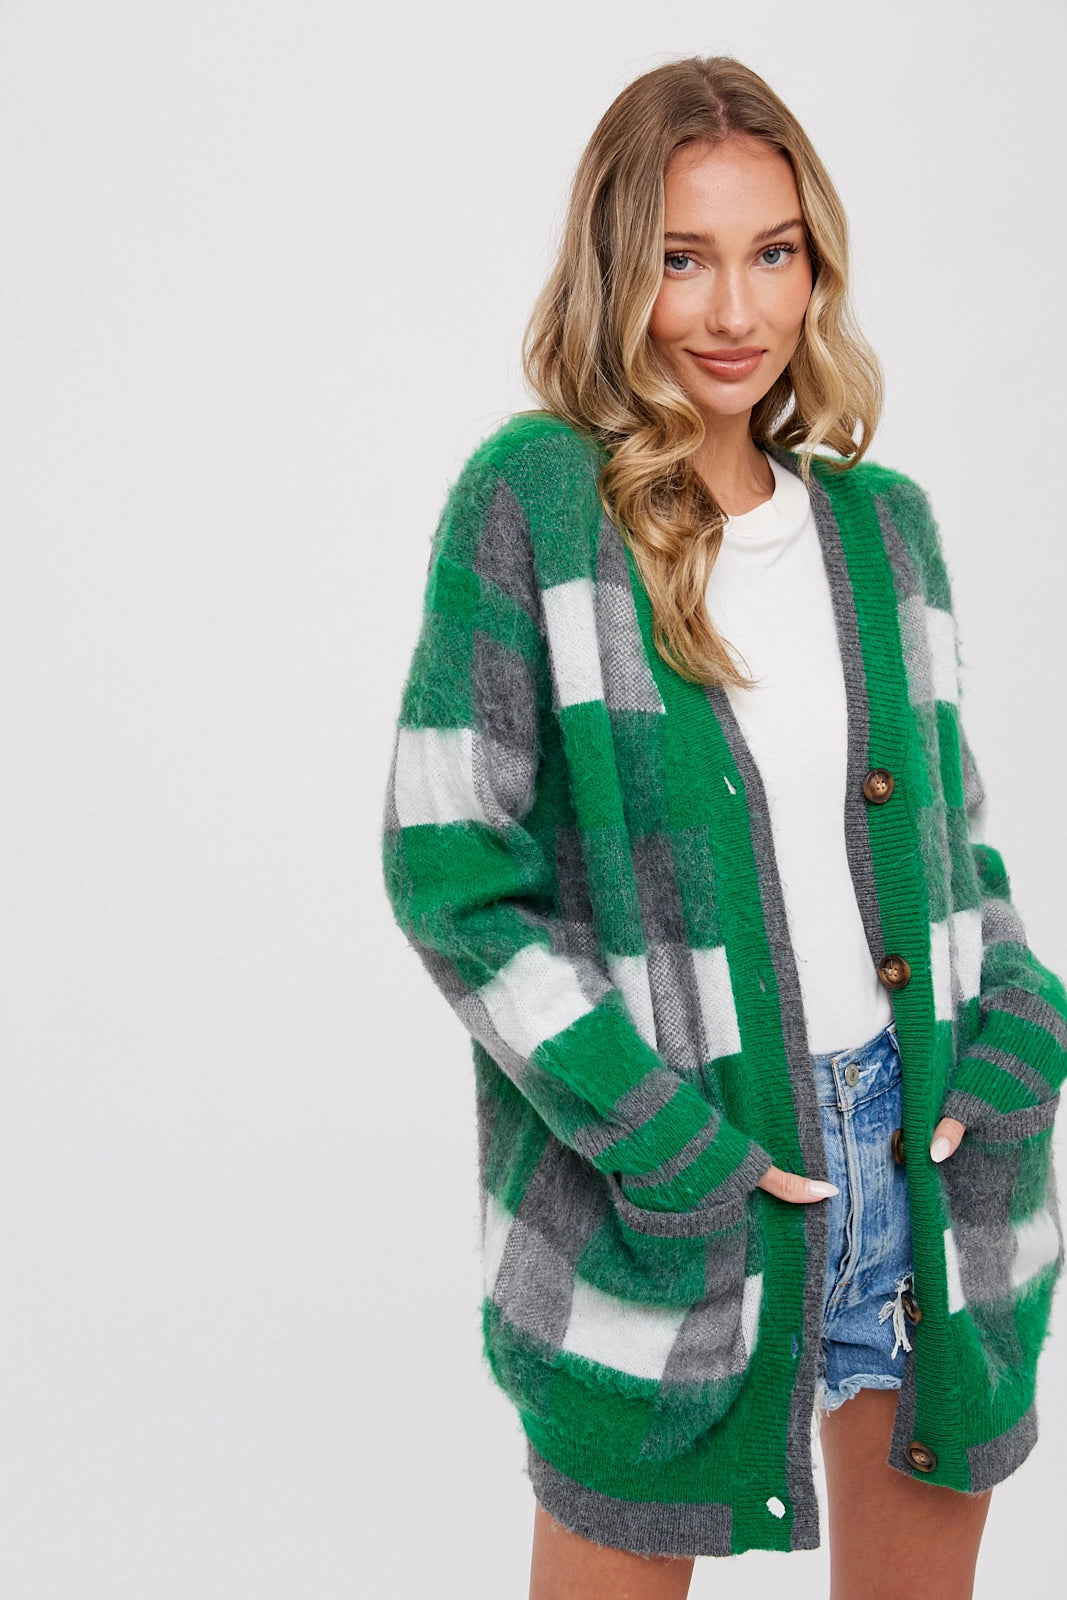 Tartan Green Plaid Sweater Cardigan